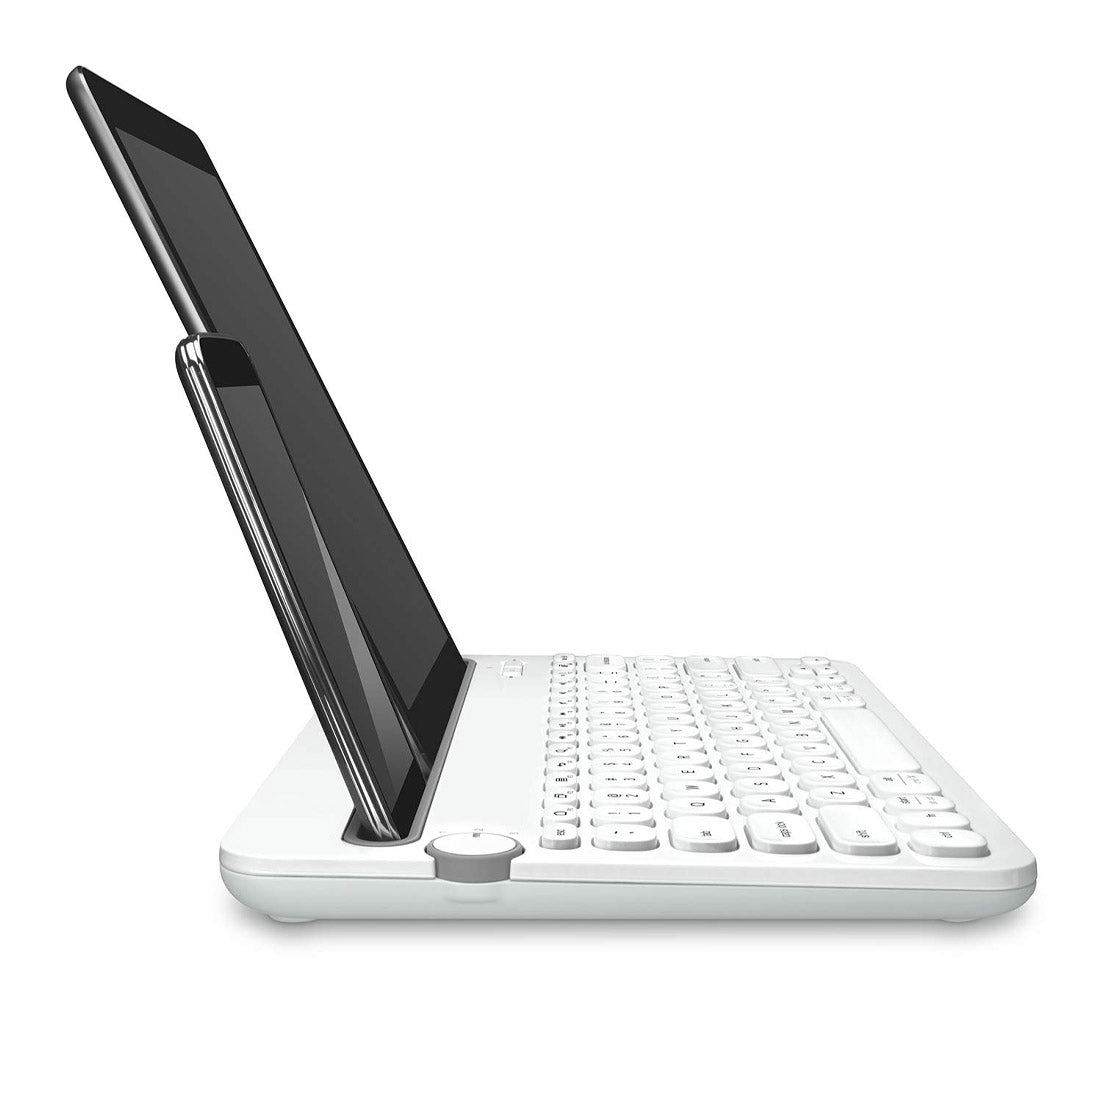 Logitech K480 वायरलेस मल्टी-डिवाइस कीबोर्ड व्हाइट ब्लूटूथ कनेक्टिविटी के साथ 10 मीटर रेंज तक